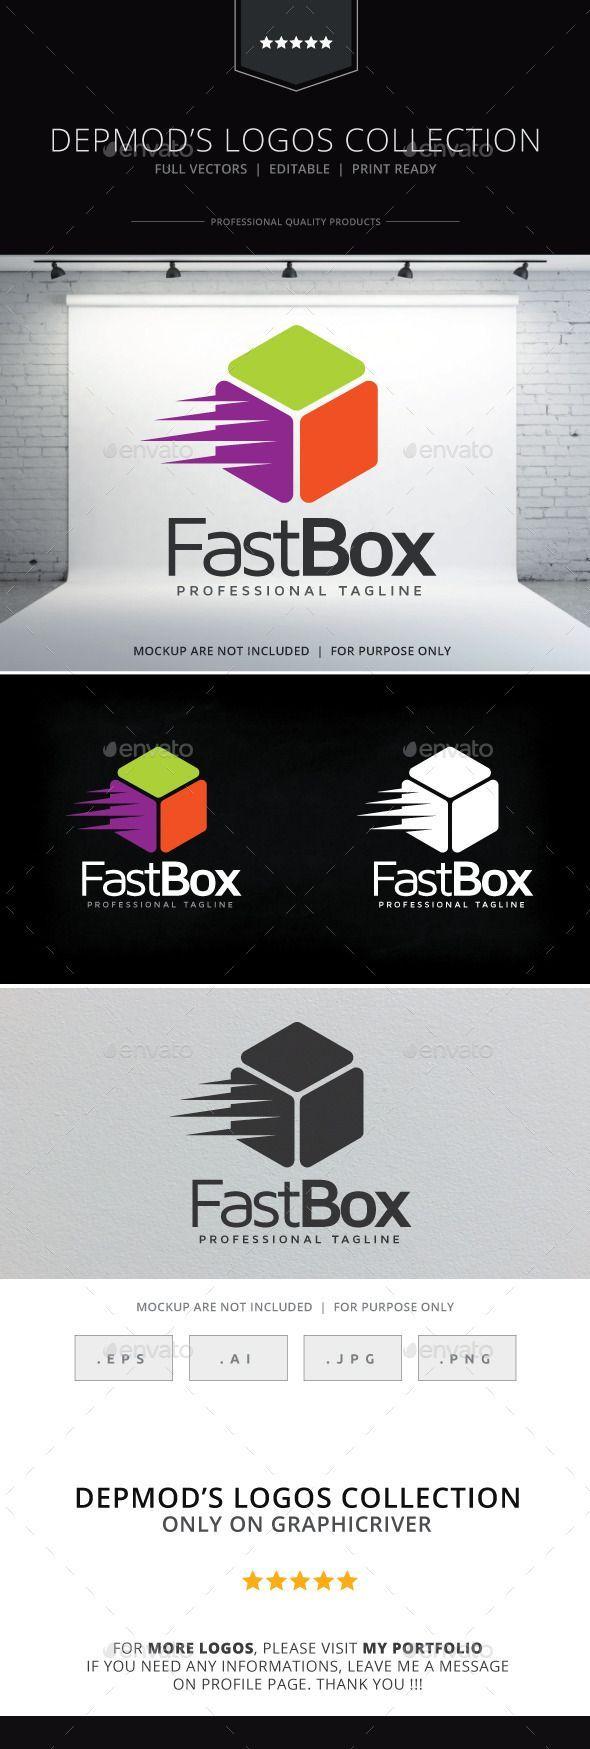 Box S Logo - Fast Box Logo | Logo Collection | Pinterest | Logos, Logo templates ...